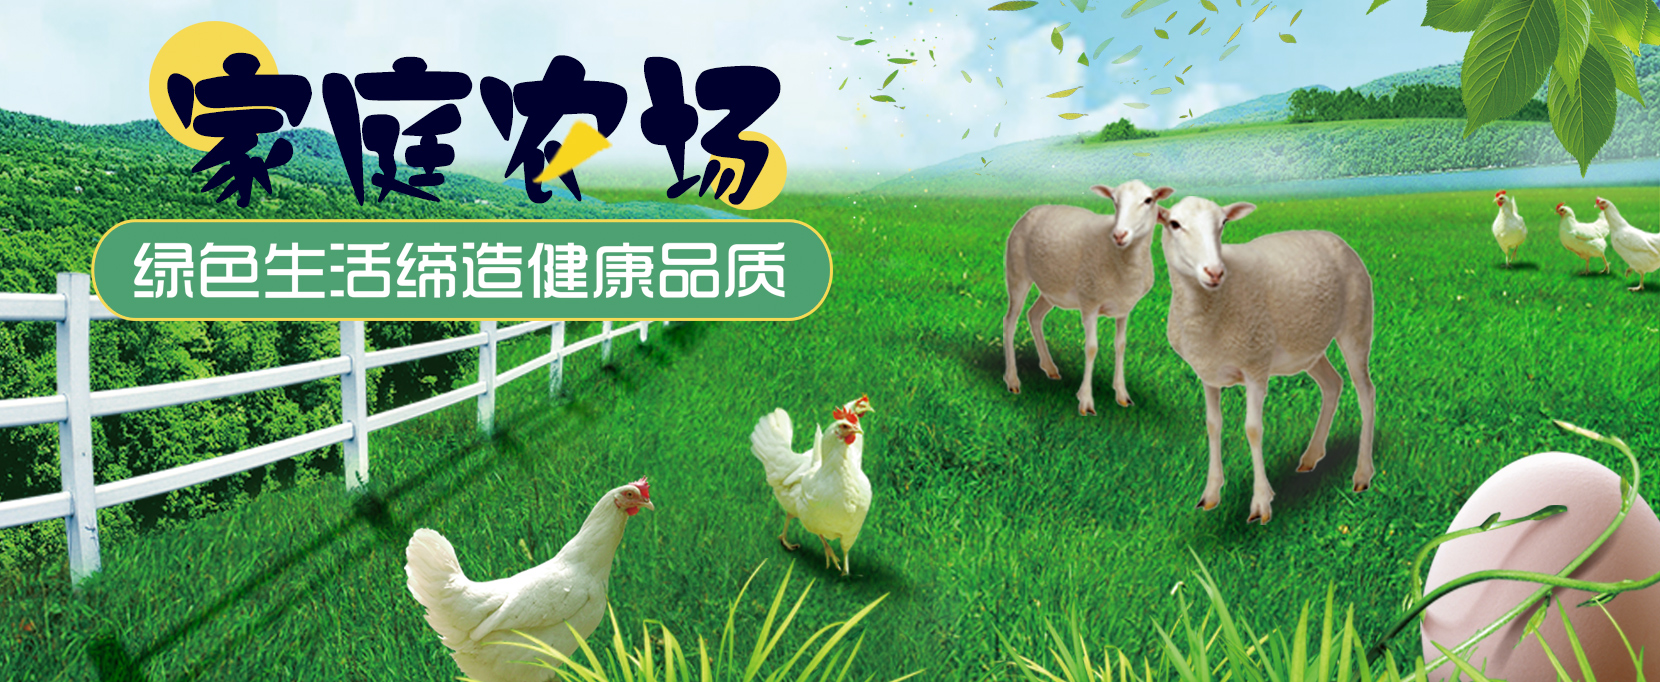 重庆花季传媒APP官方下载免费农产品配送有限公司